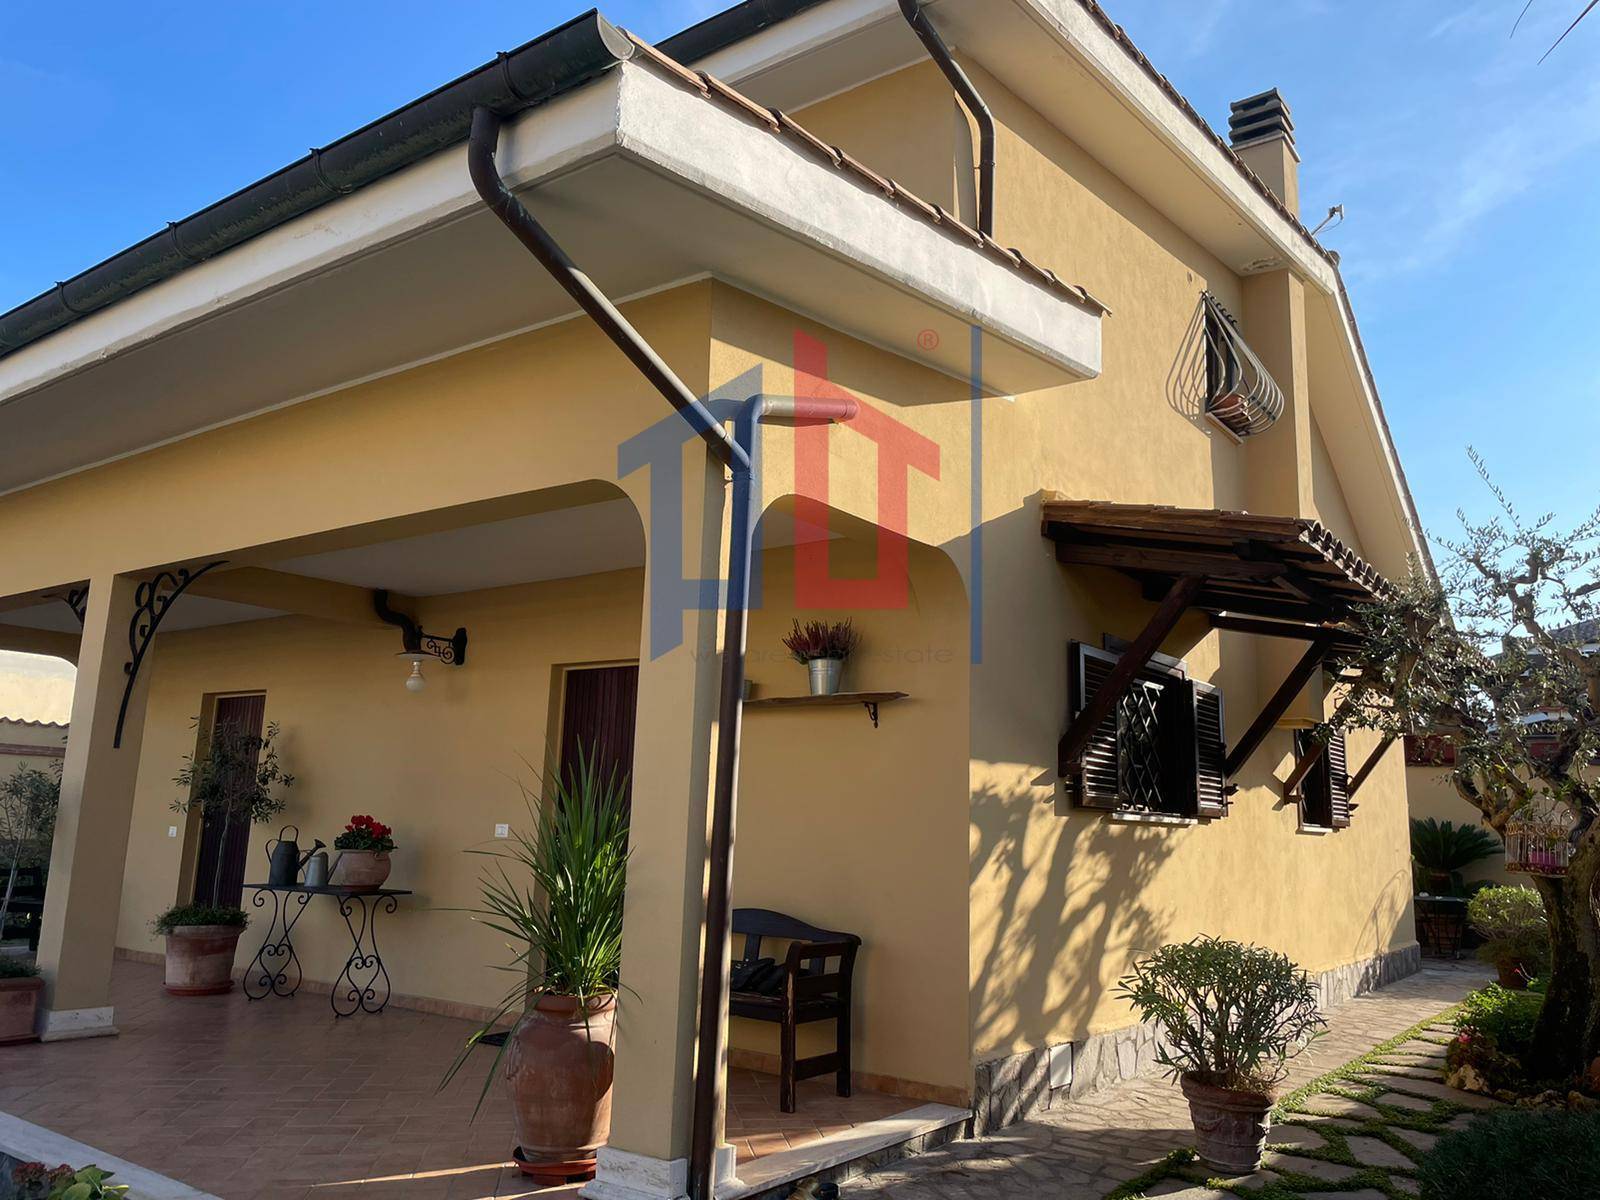 Villa Bifamiliare in vendita a Ardea, 4 locali, zona Località: NuovaFlorida, prezzo € 169.000 | PortaleAgenzieImmobiliari.it